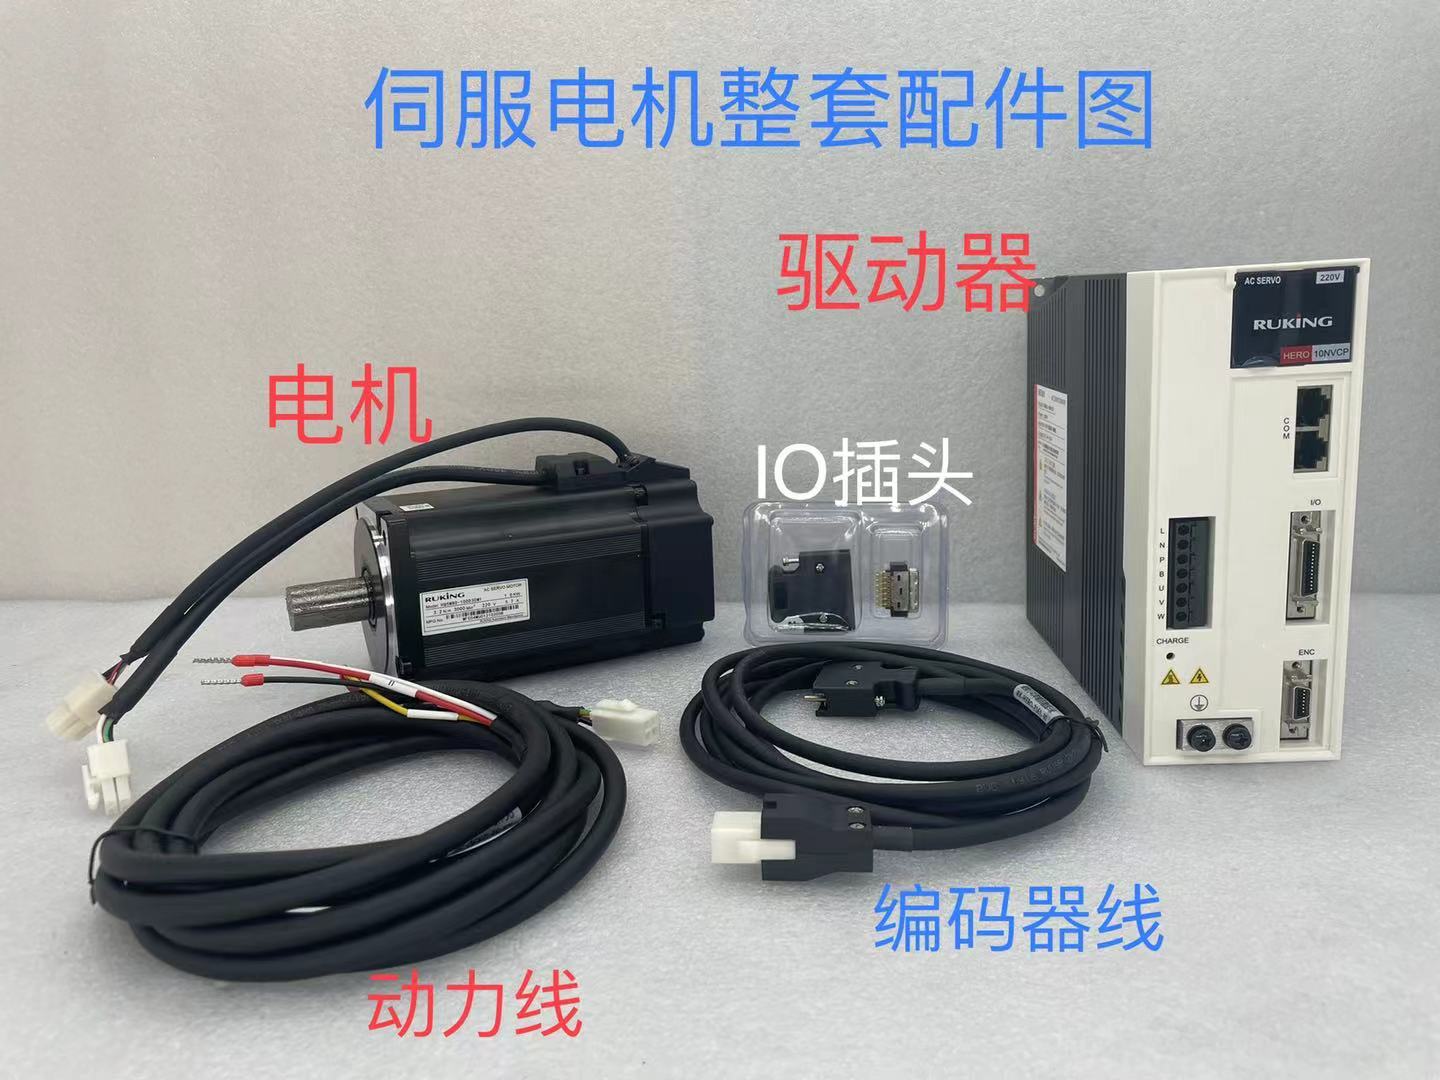 代理上海儒竞RUKING伺服电机系列产品